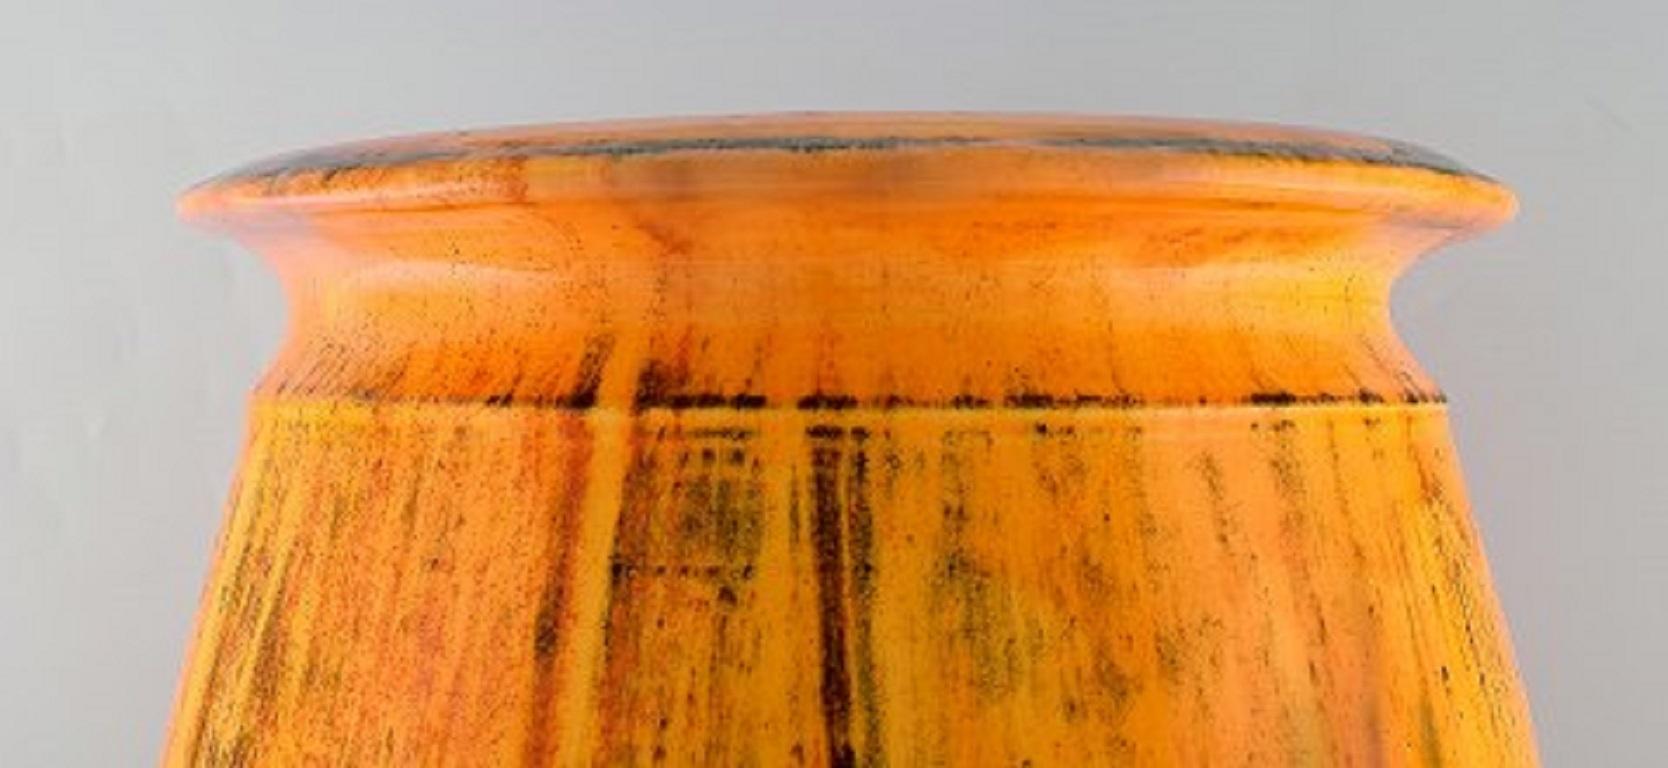 Svend Hammershøi for Kähler, Denmark, Colossal Vase in Glazed Stoneware 1